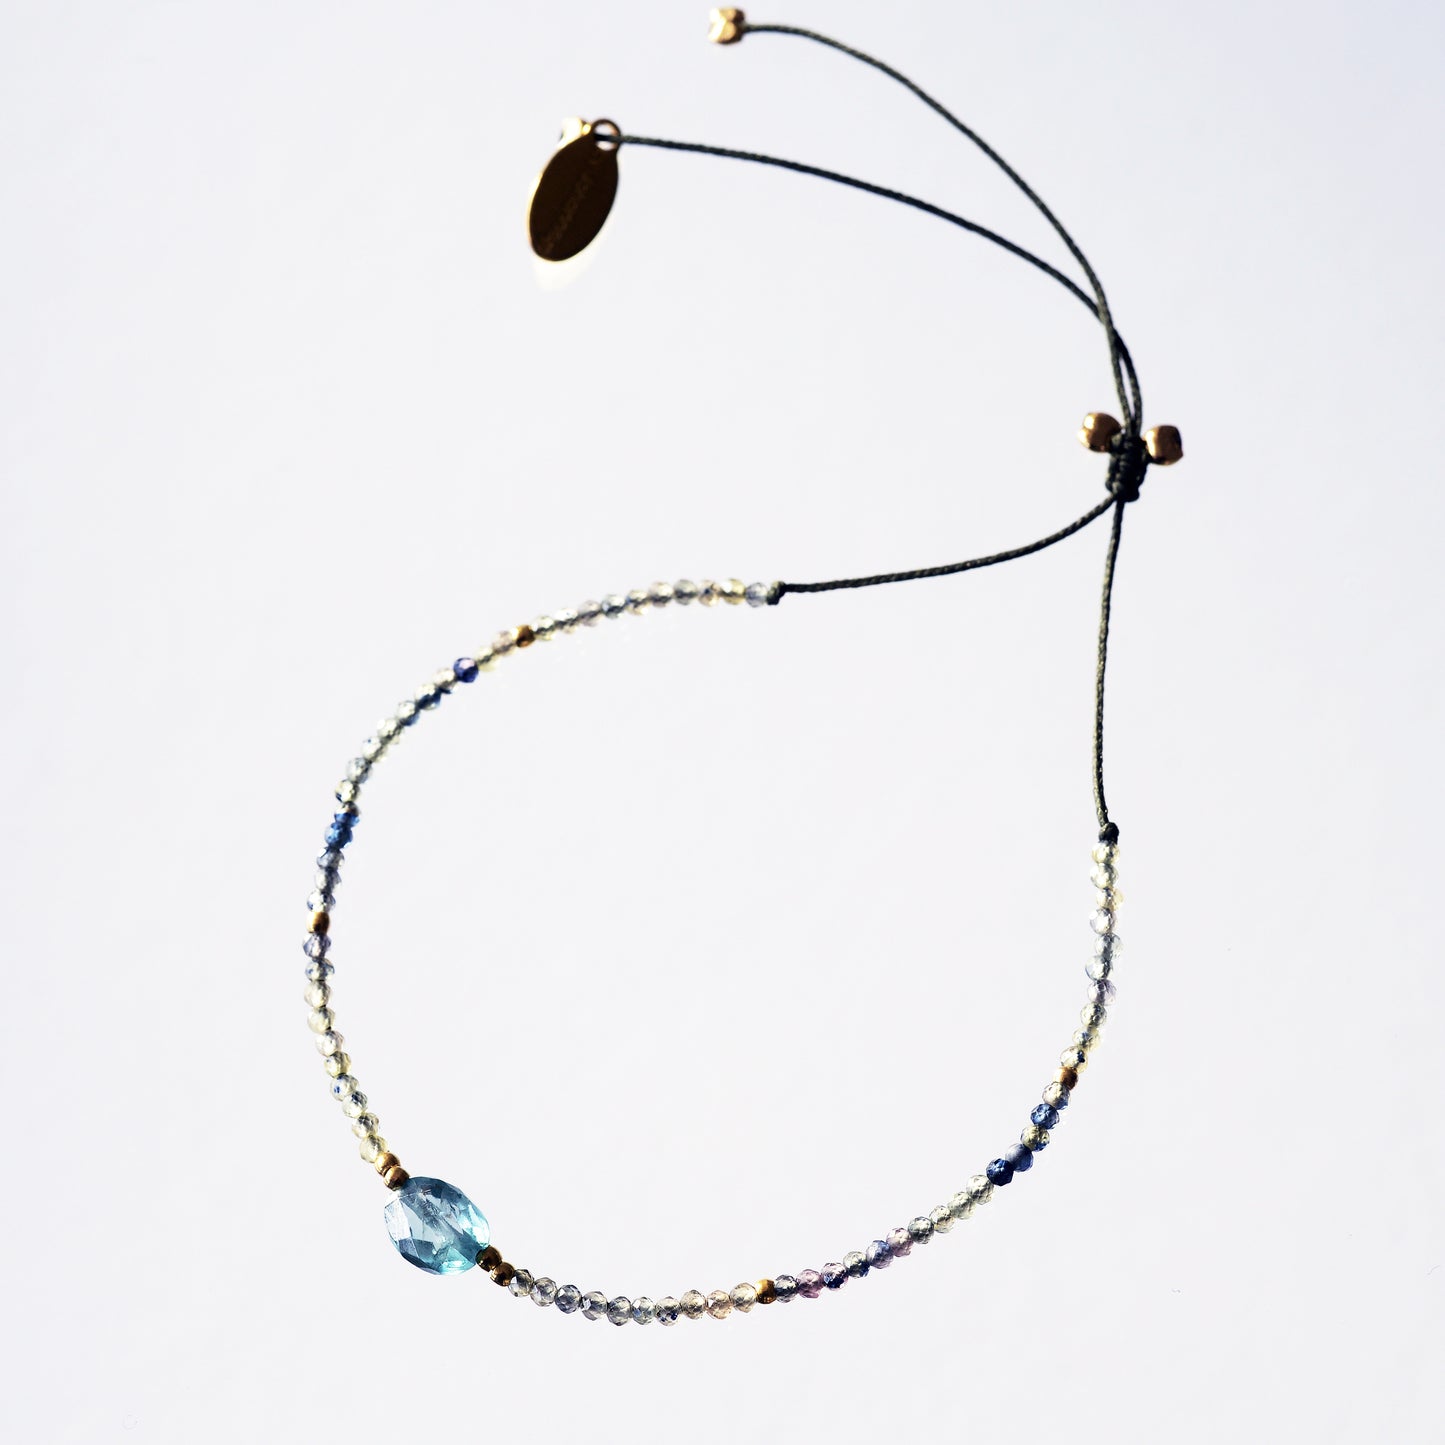 Bracelet sur fil kaki avec bluevert saphirs 2mm +1 blue zircon oval au centre